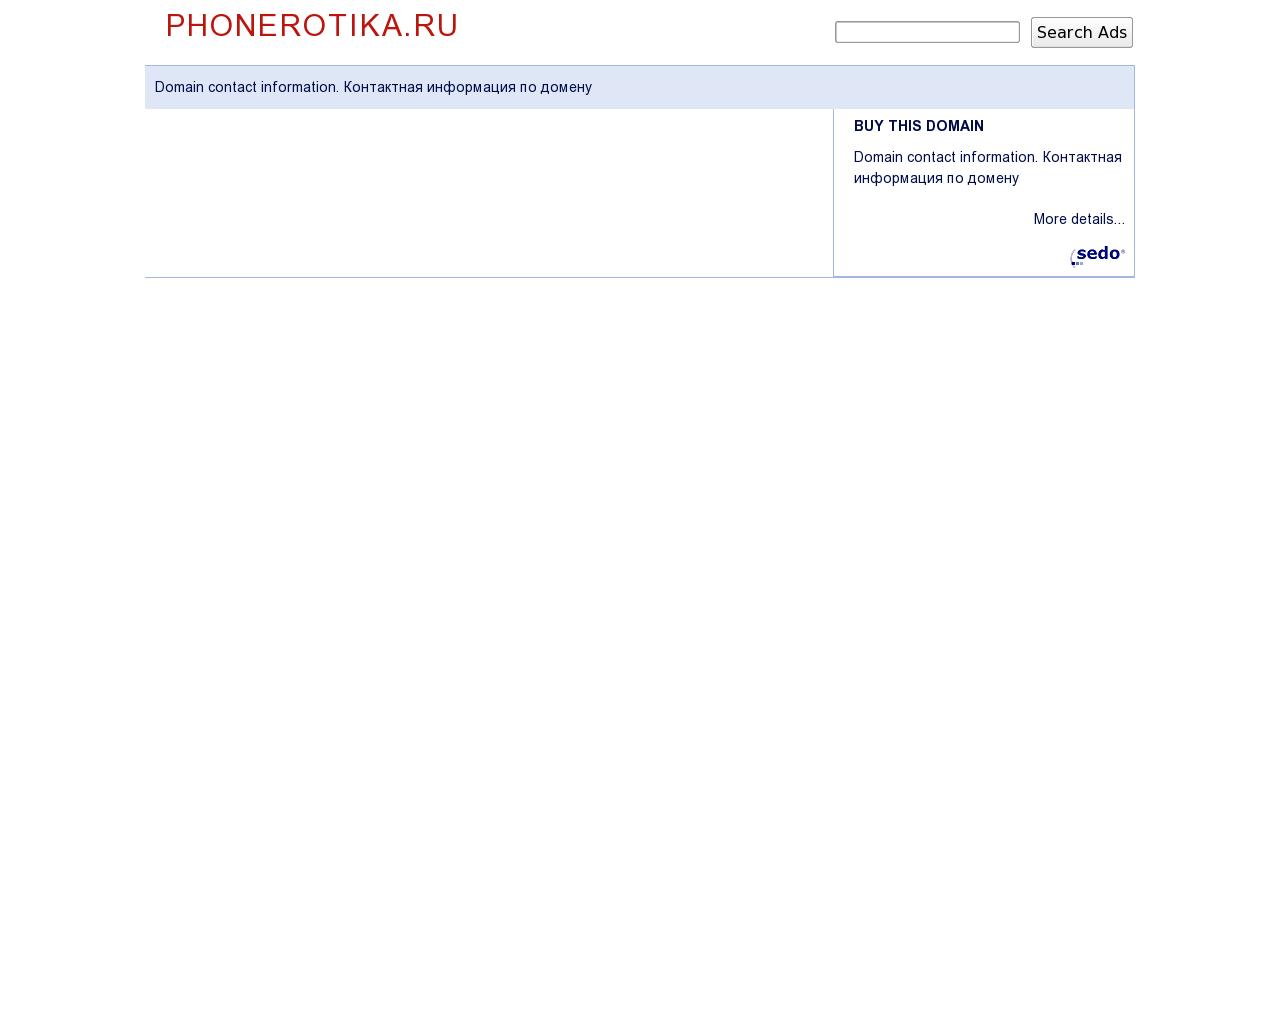 Изображение сайта phonerotika.ru в разрешении 1280x1024